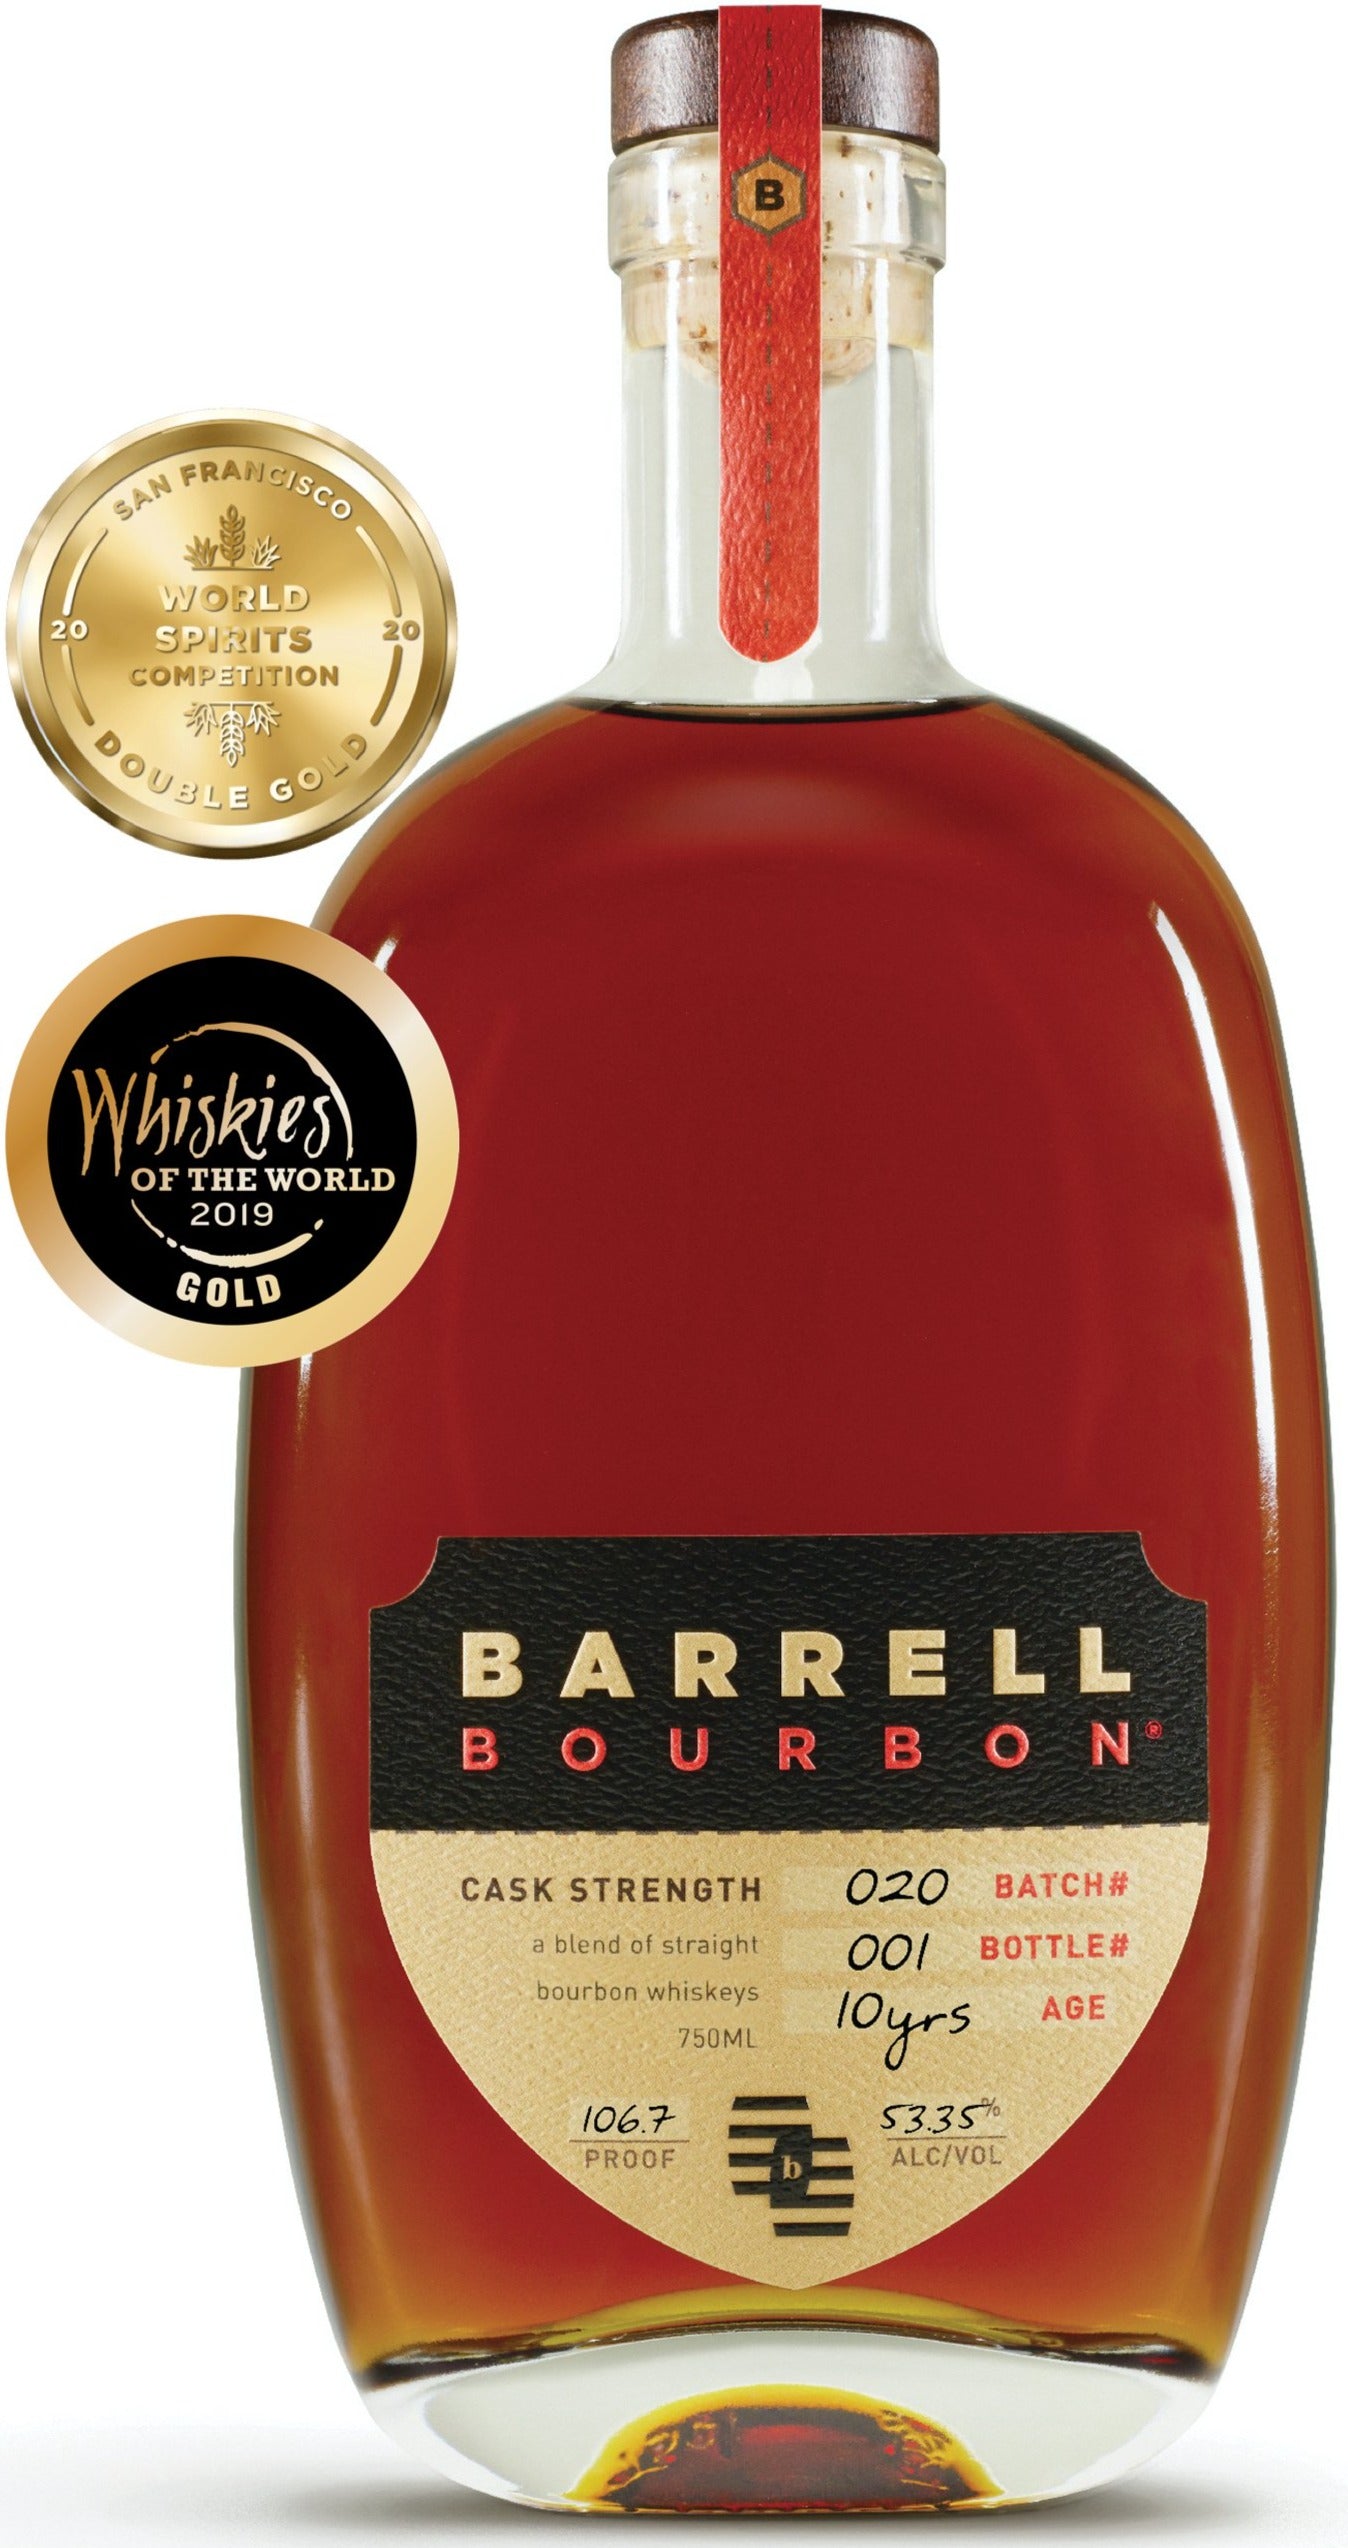 Barrell Bourbon Batch 020 53.35% abv 750ml